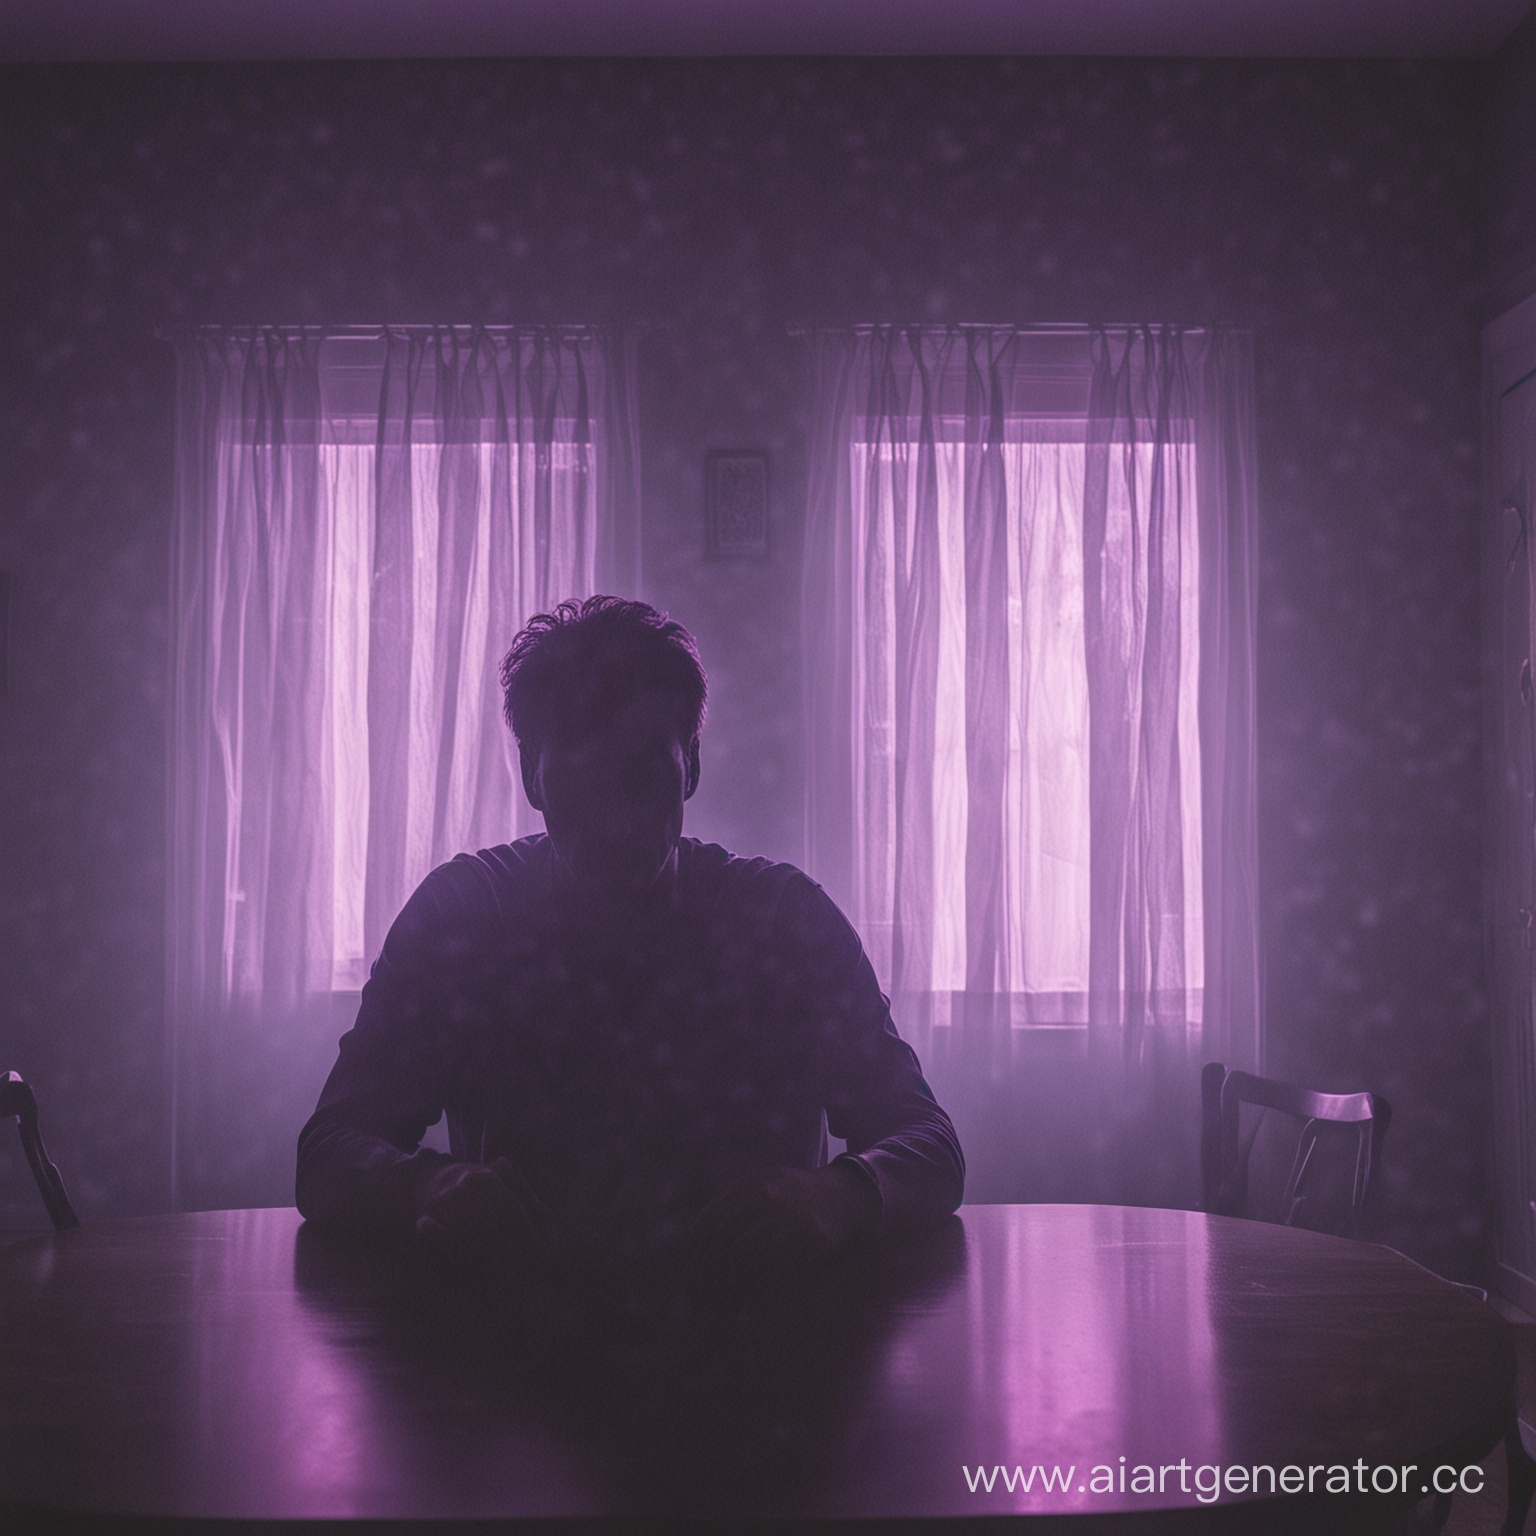 мужчина лицо которого не видно в темноте сидит за столом и светит фиолетовый свет из окна